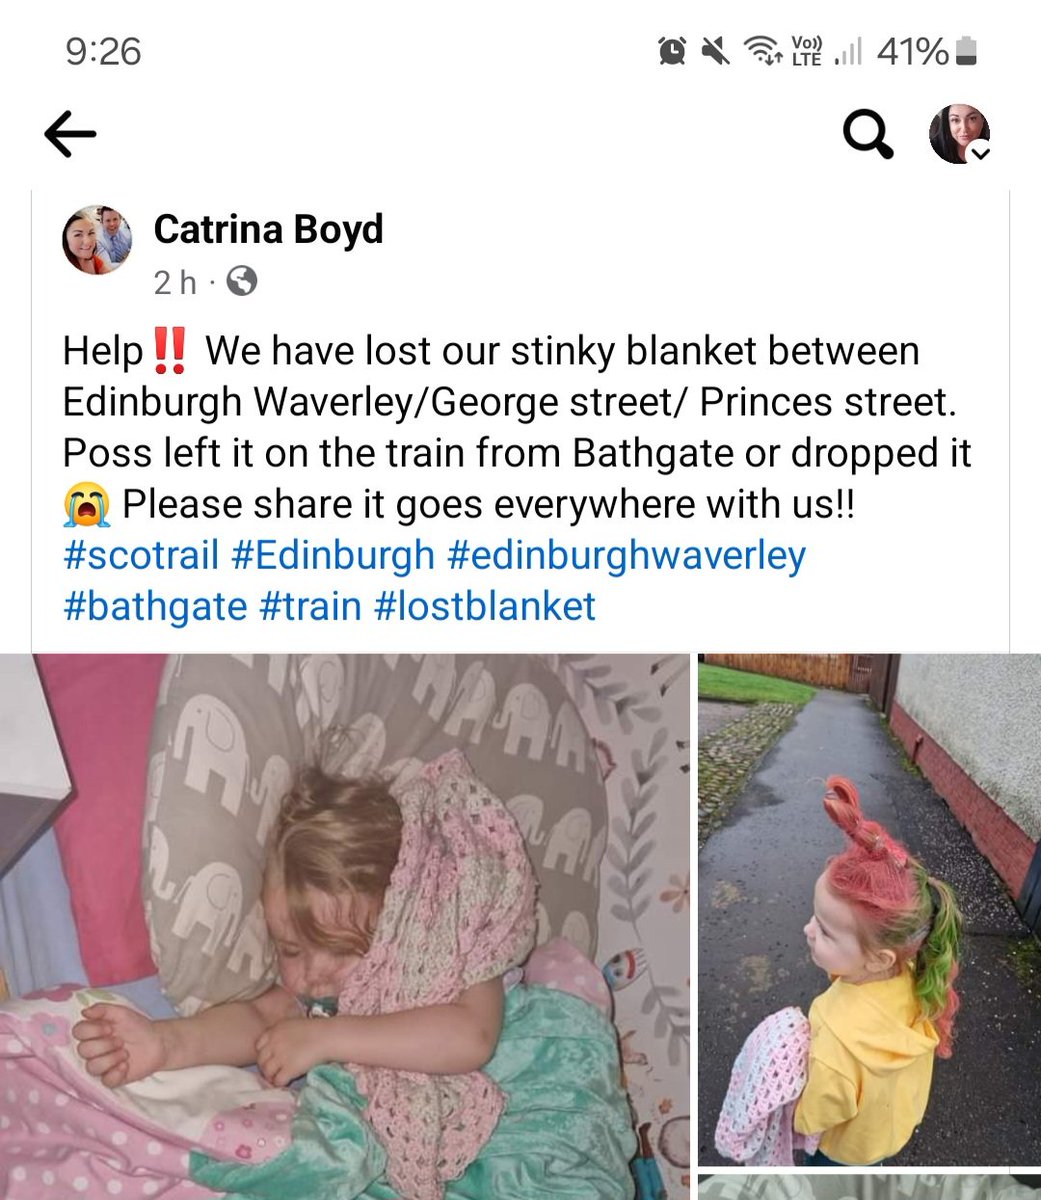 Missing blanket - please keep a look out and let me know if seen. 
#scotrail #Edinburgh #waverley #georgestreet #princesstreet #missingblanket #lostblanket